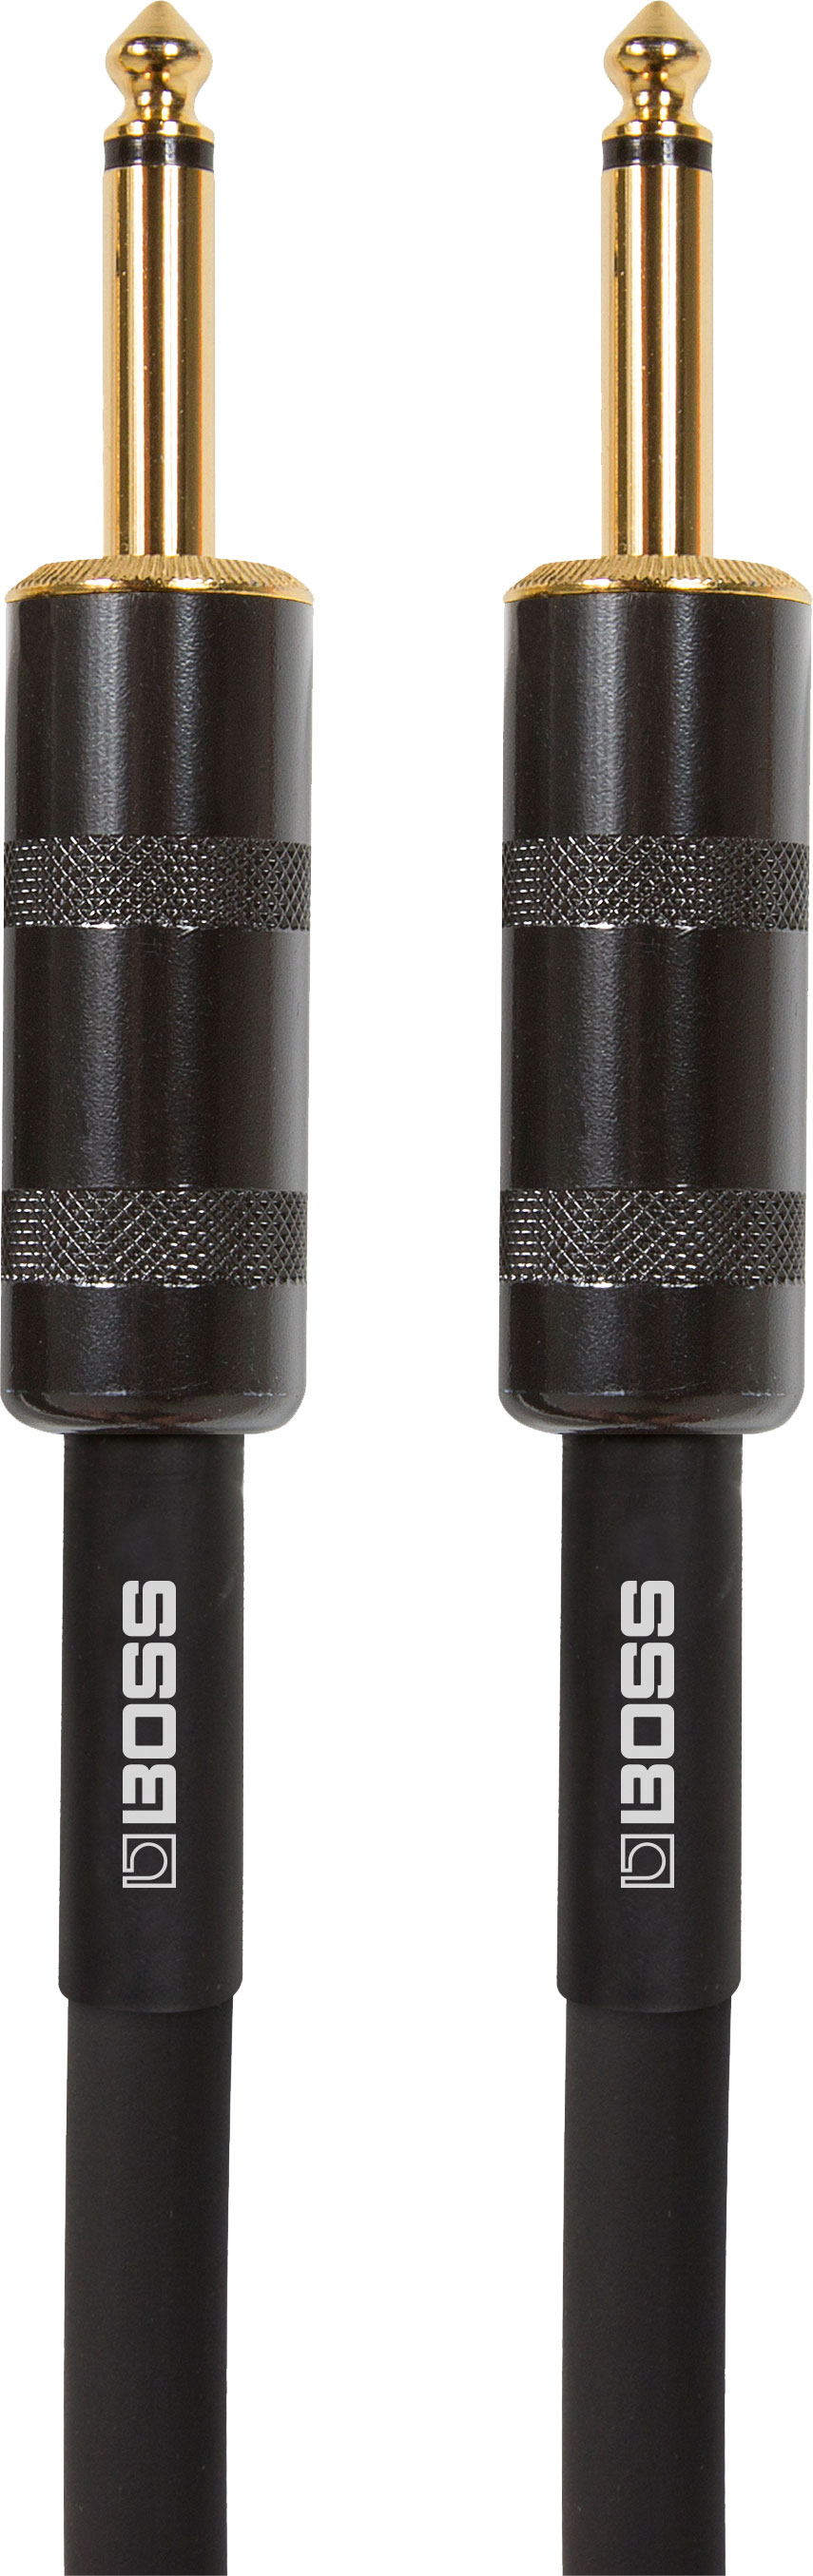 BSC-5 Lautsprecherkabel 1,5m